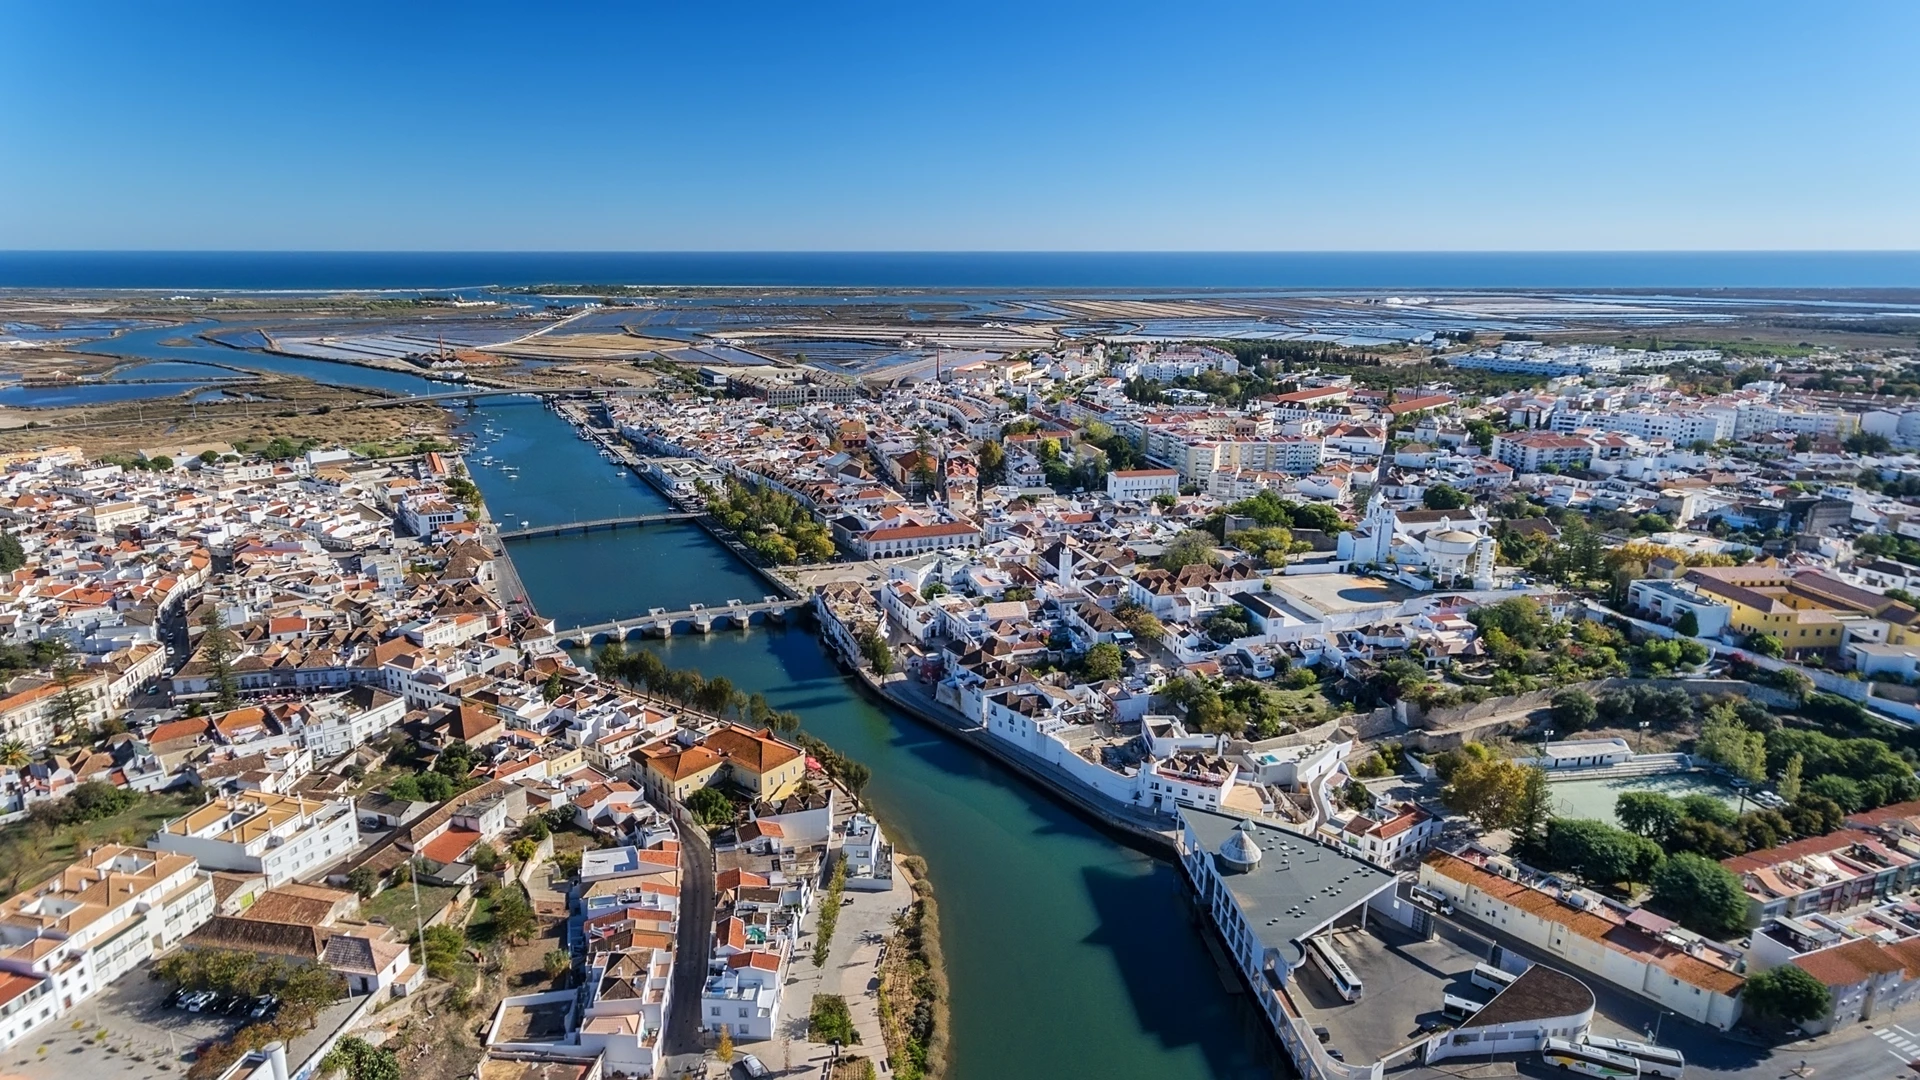 Thị trường bất động sản Bồ Đào Nha: Những điều cần lưu ý trước khi đầu tư 2023